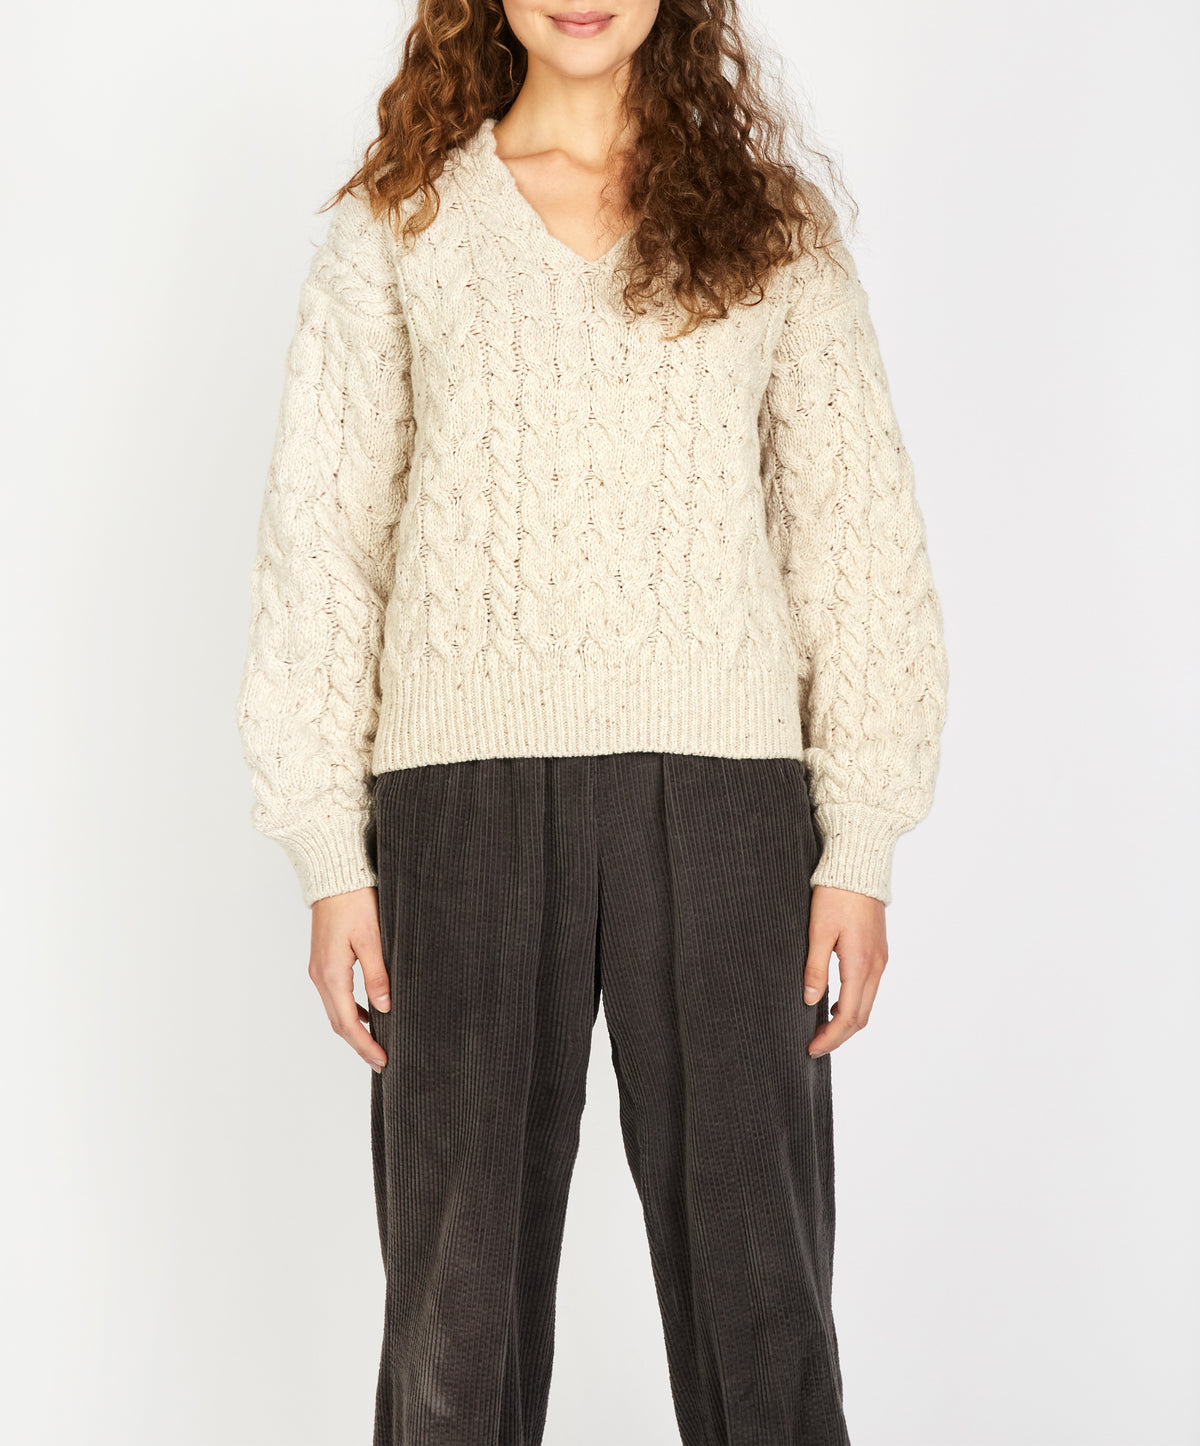 IrelandsEye Knitwear Hapenny Horseshoe Sweater Chalkstone